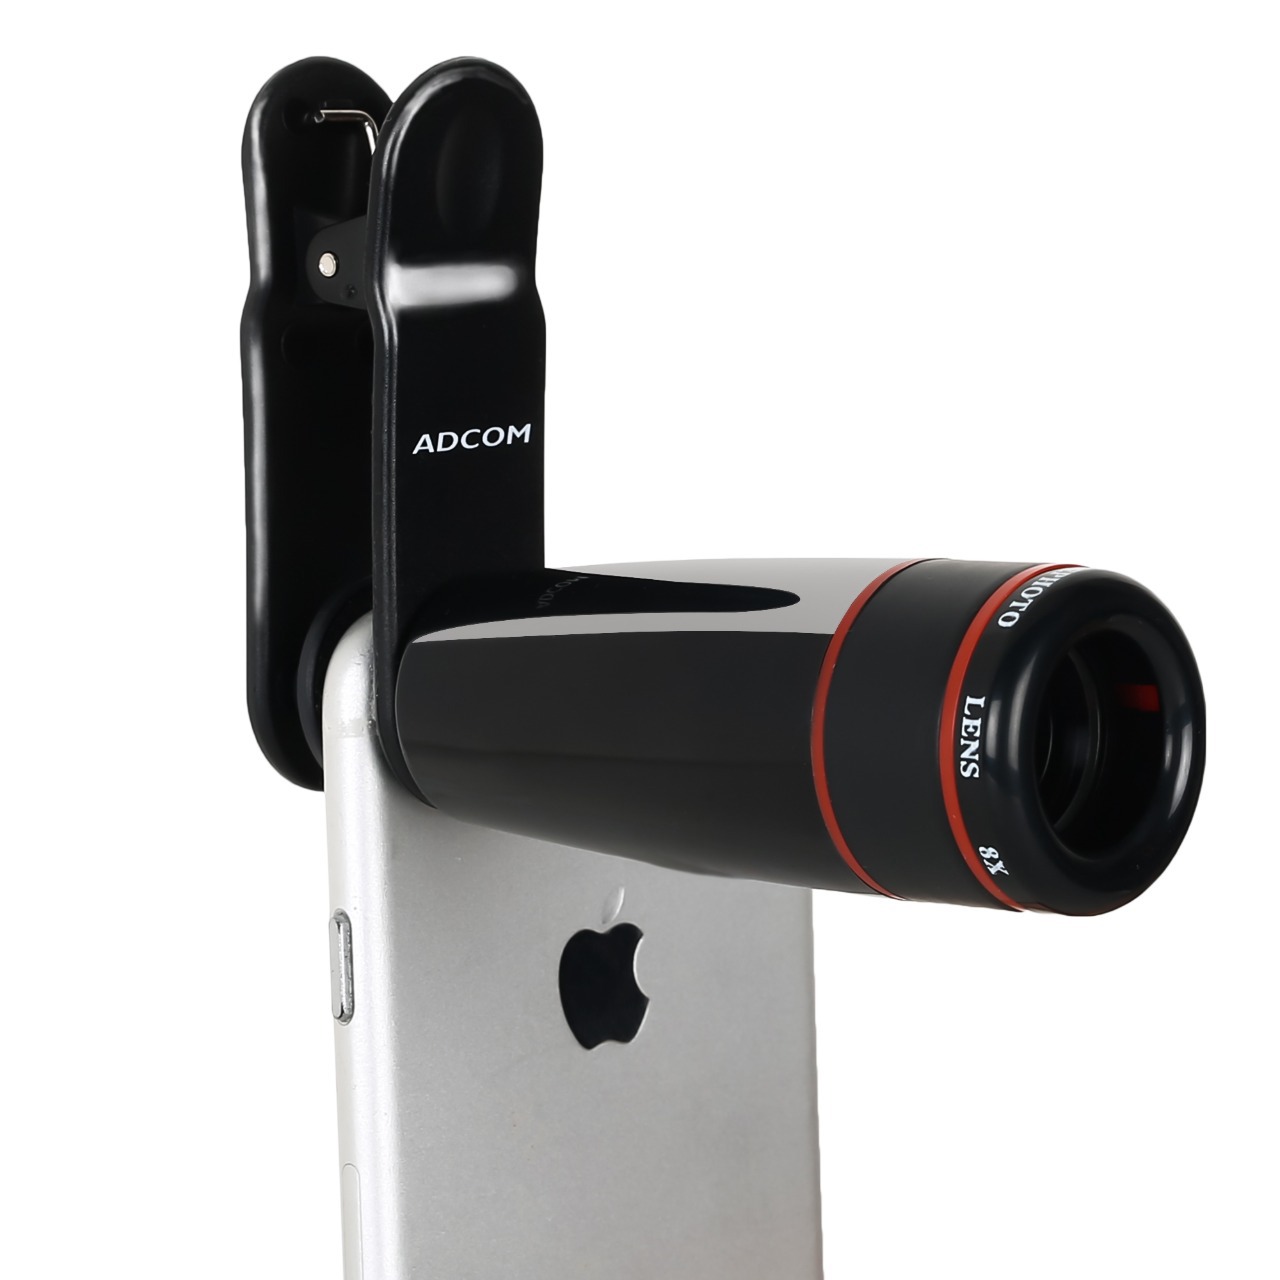 Adcom 8X Telephoto Zoom Mobile Phone Camera Lens (Black)